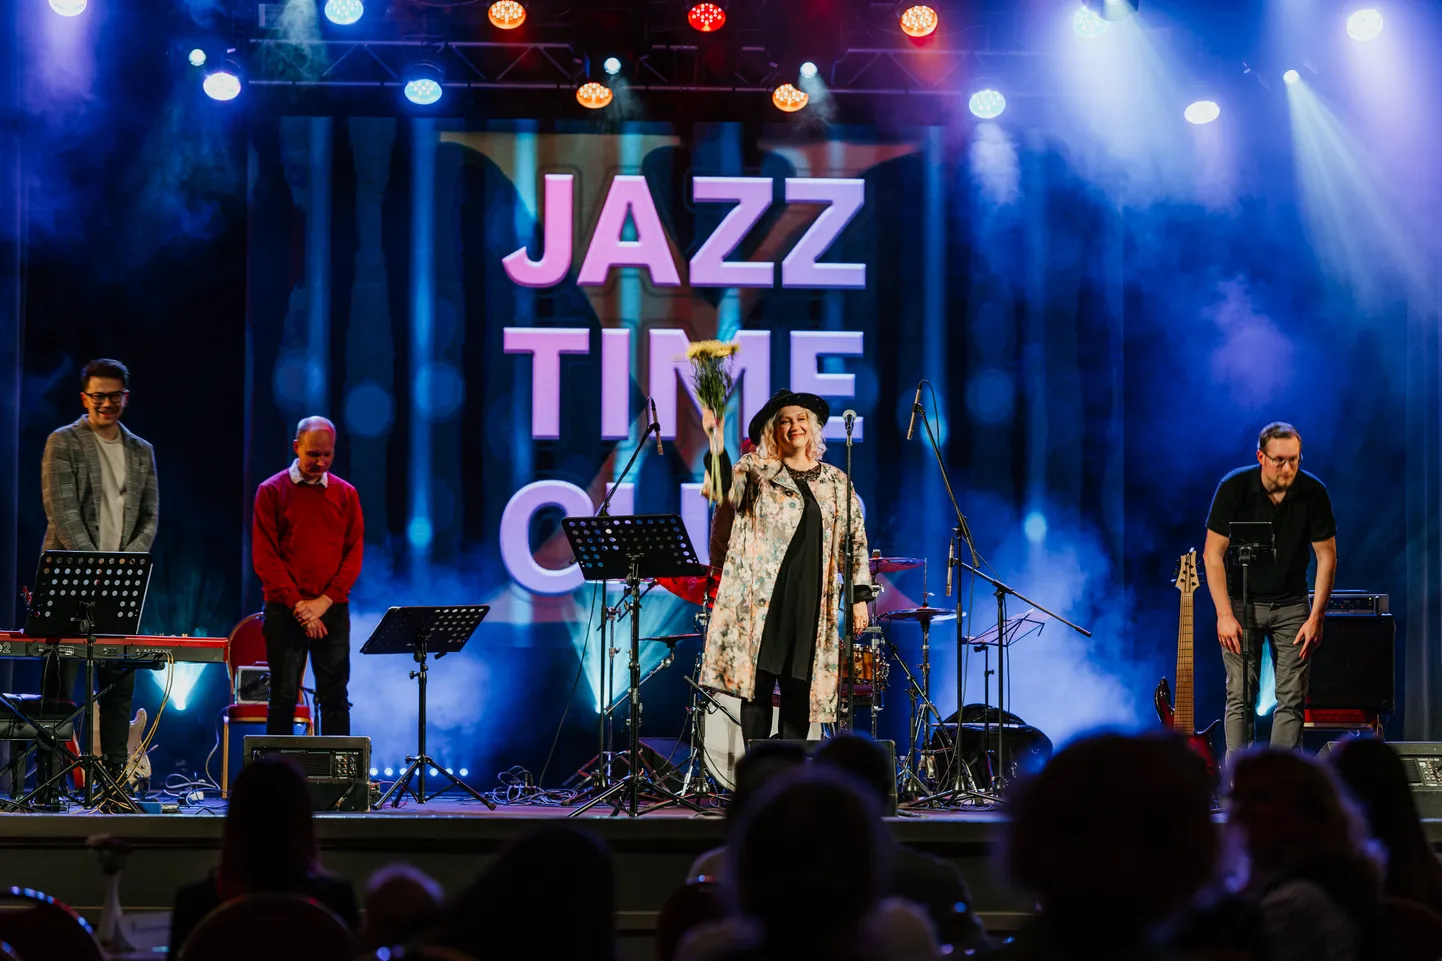 София Рубина-Хантер и ее бенд наполнили юбилей джазового клуба яркими музыкальными красками.